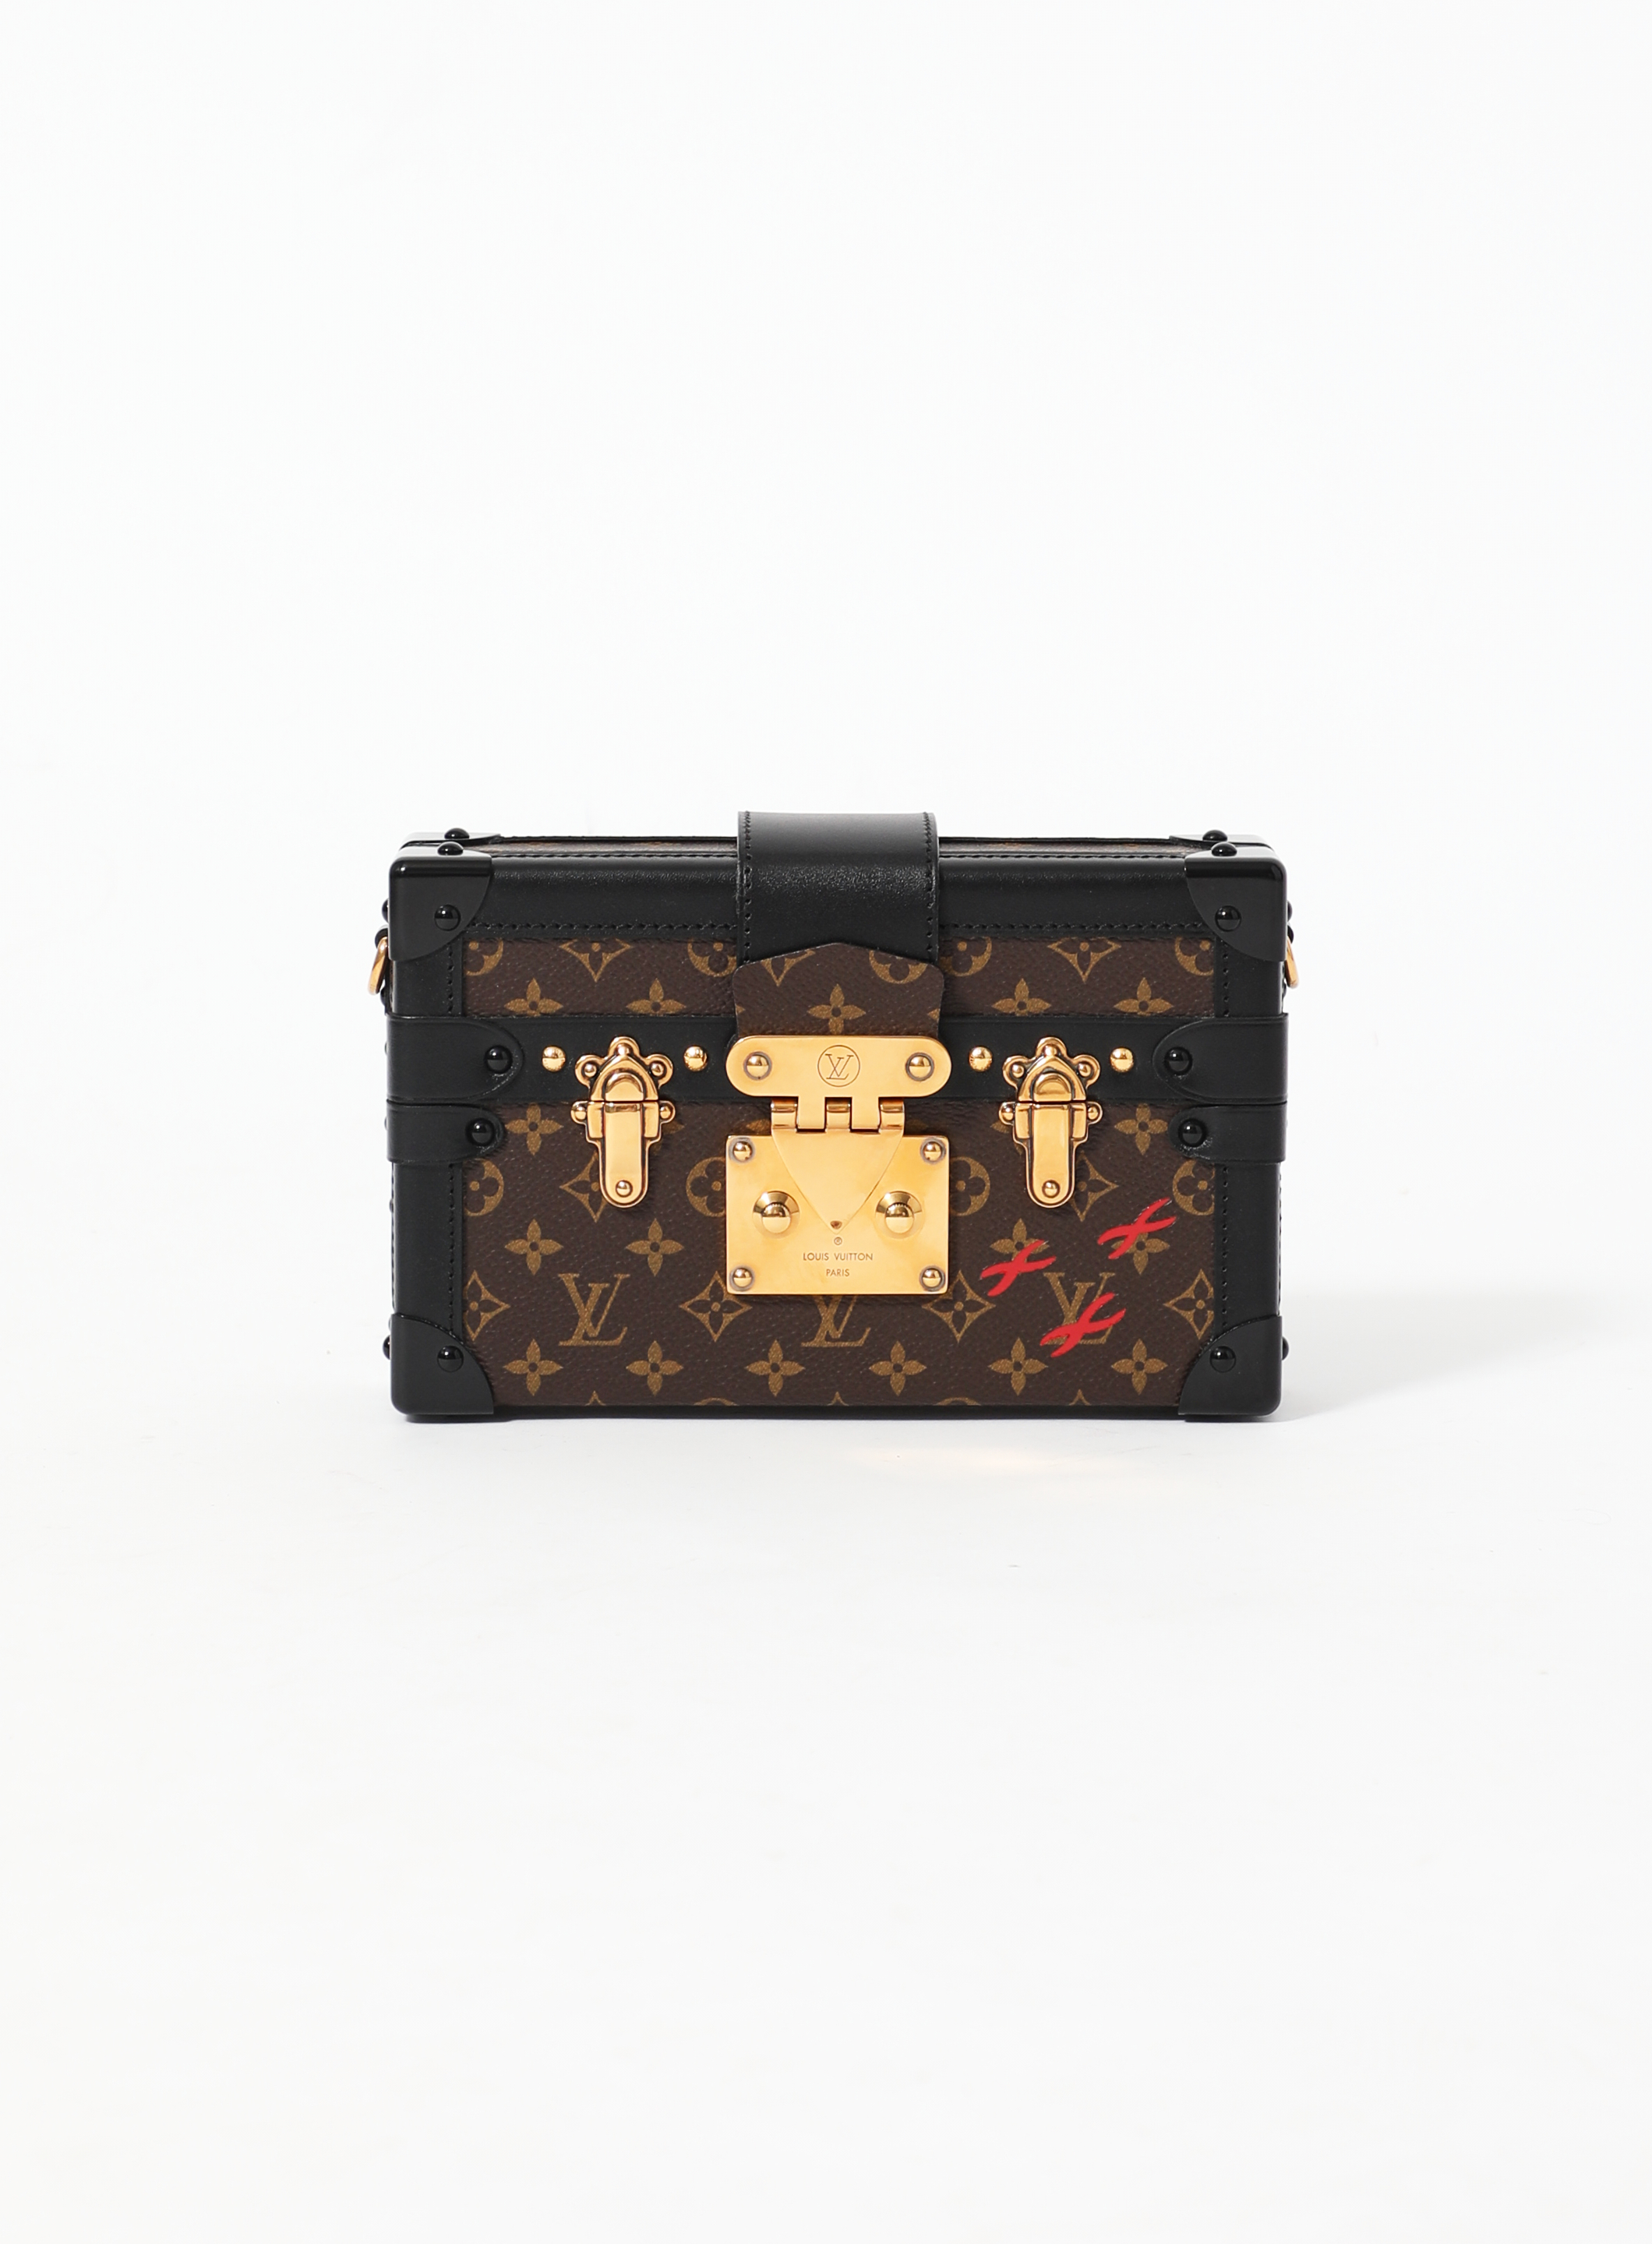 Louis Vuitton Trunk Bag iPhone Case Petit Malle